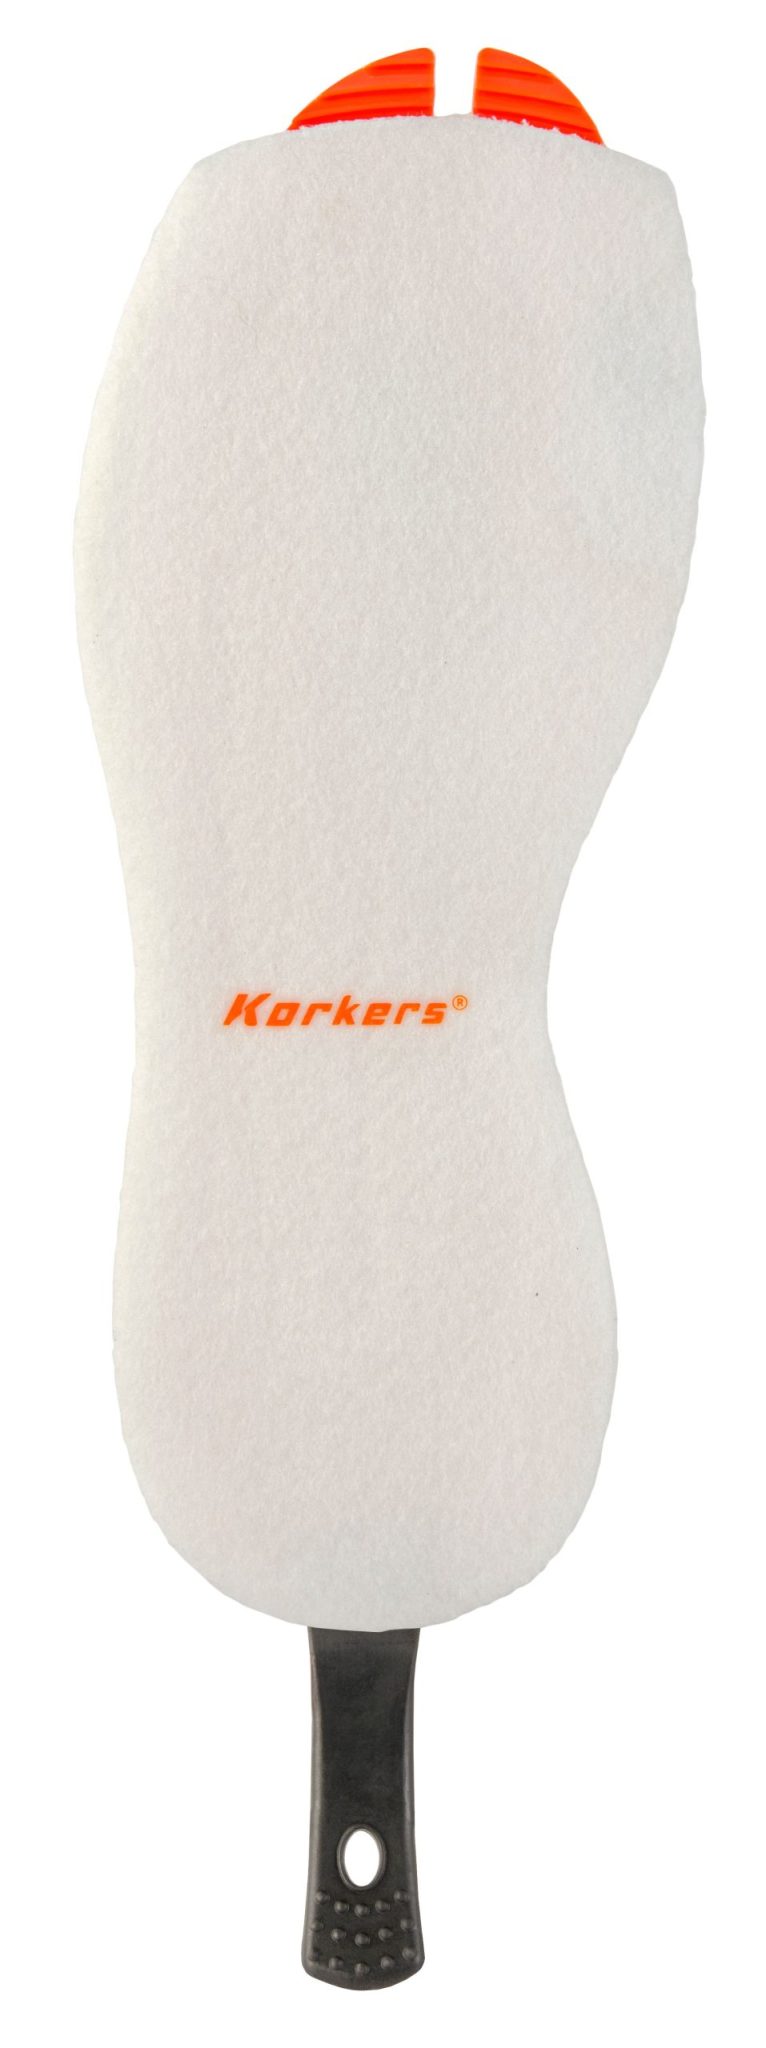 Feutre blanc avec bout orange. Écriture Korkers au centre de la semelle en écritaux orange. Languette noir avec trou à l'extrémité pour un changement facile.